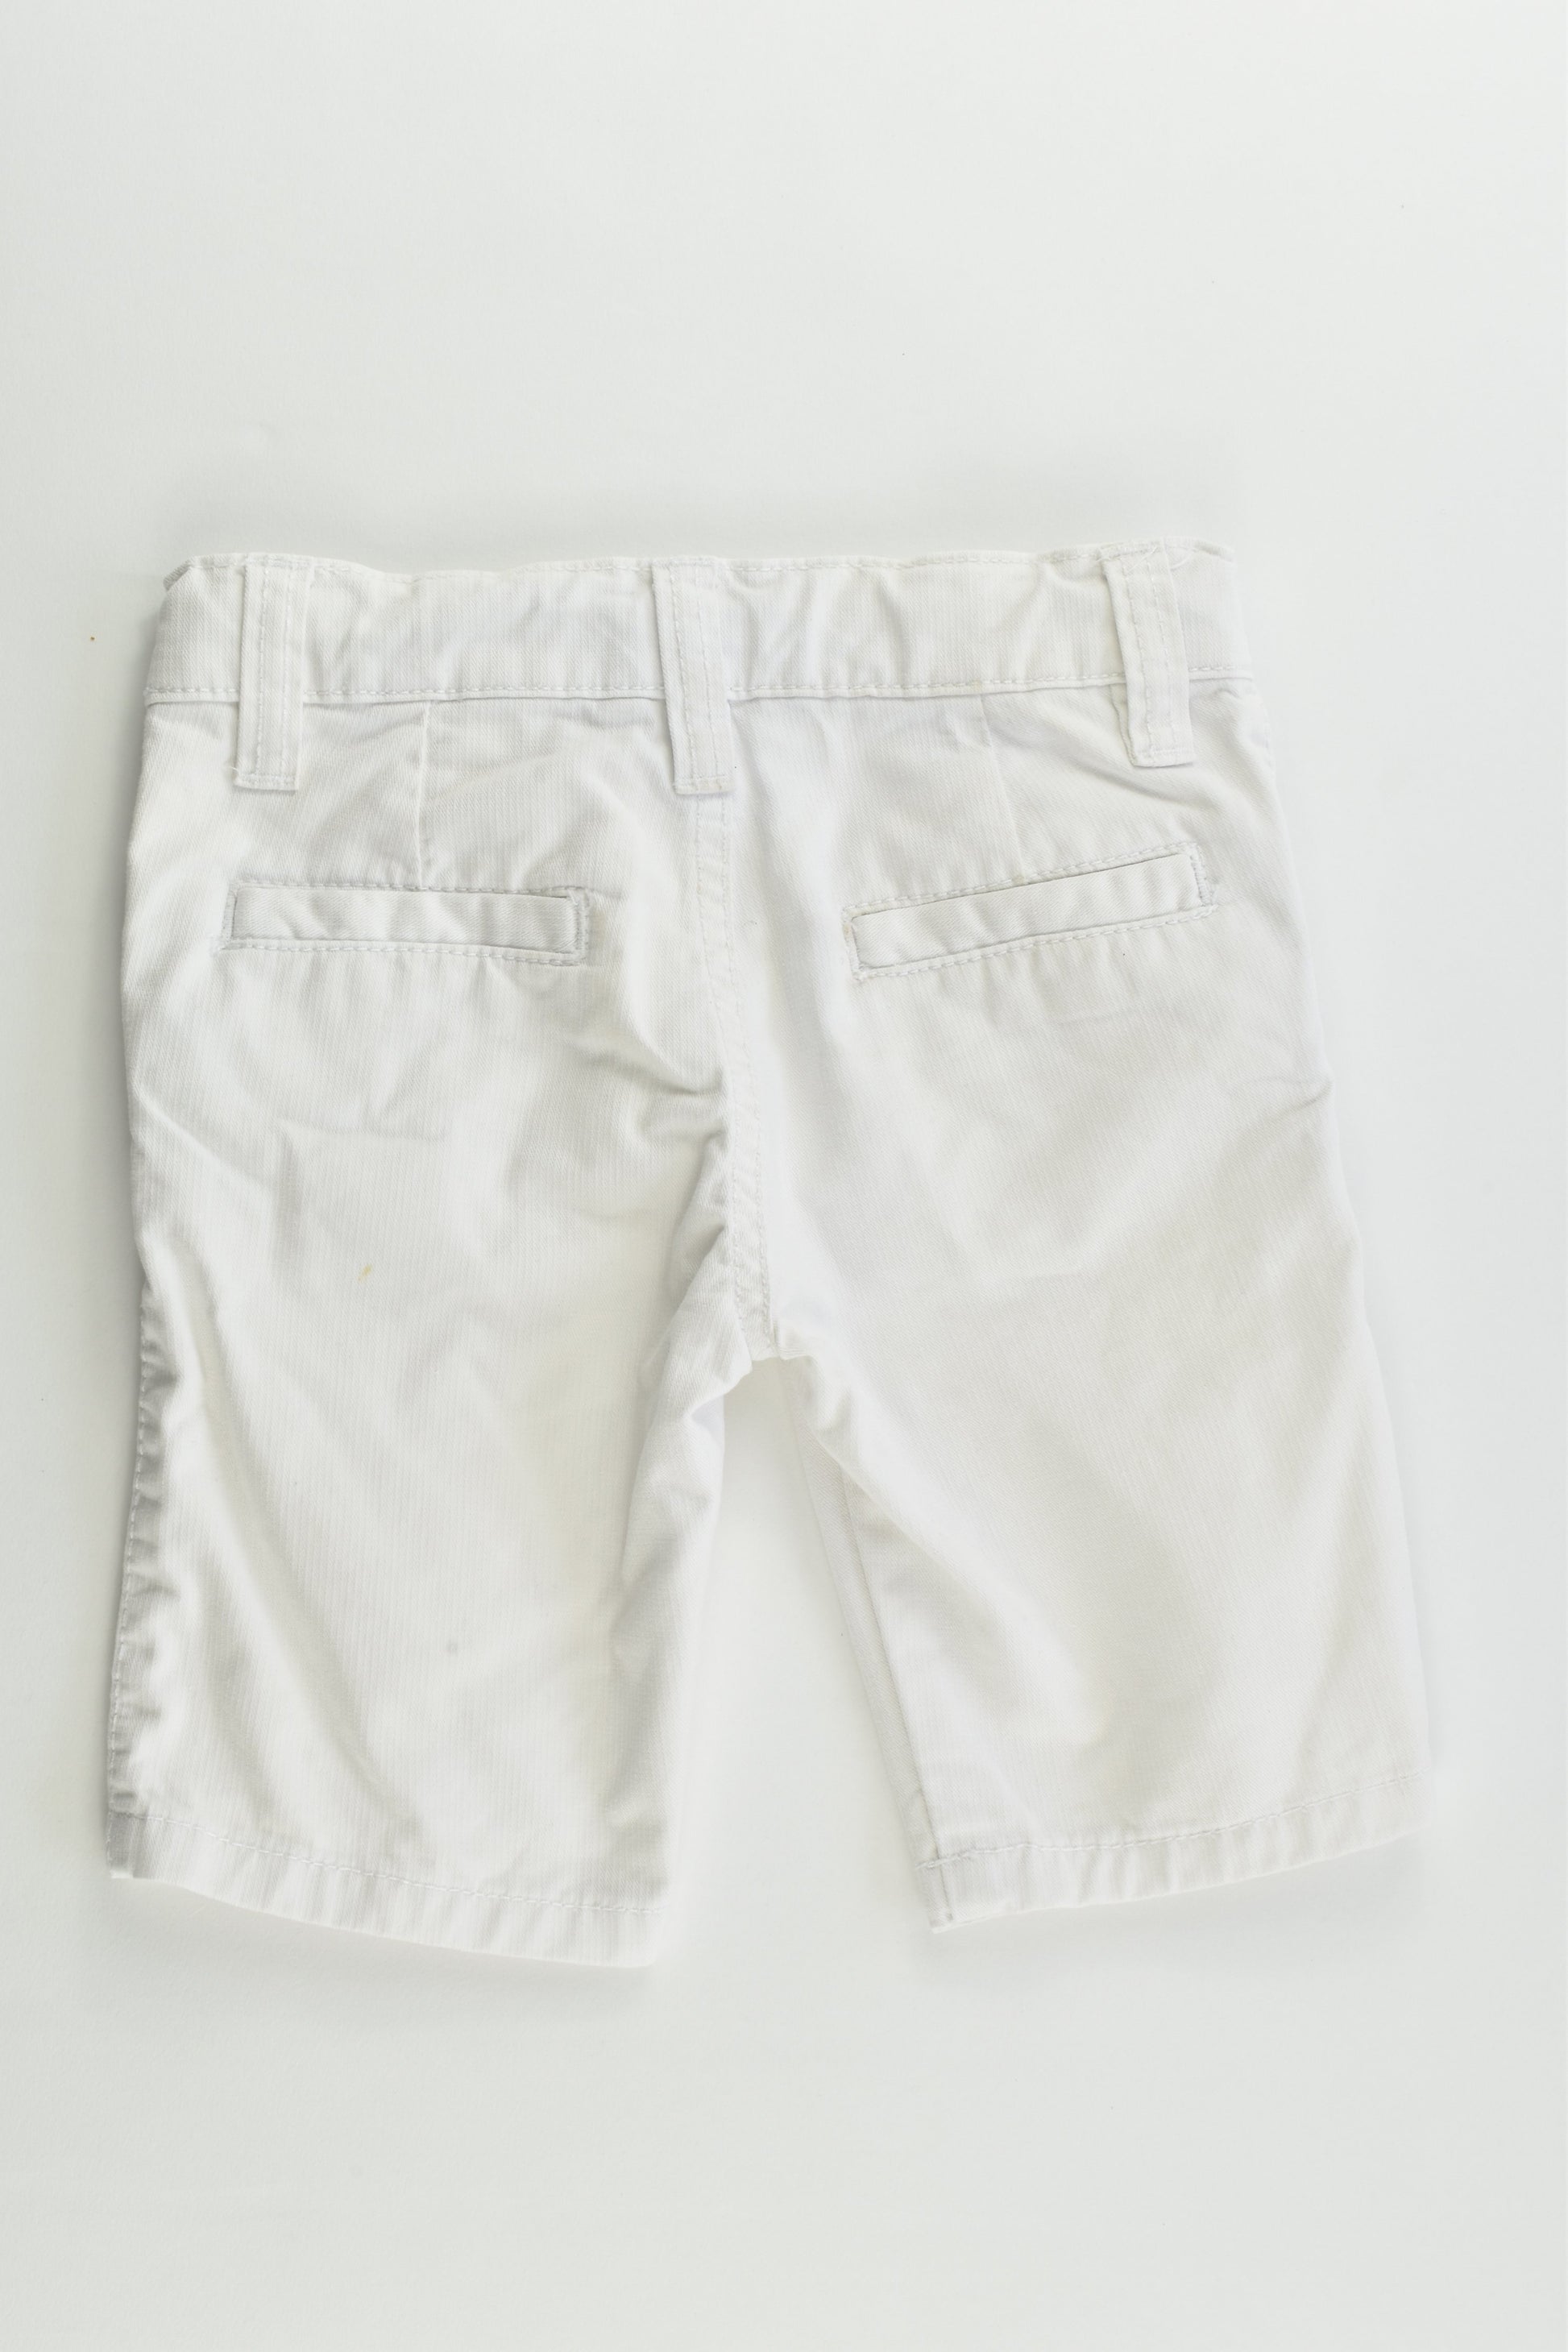 Du Pareil au Même (France) Size 2-3 (94 cm) White Shorts